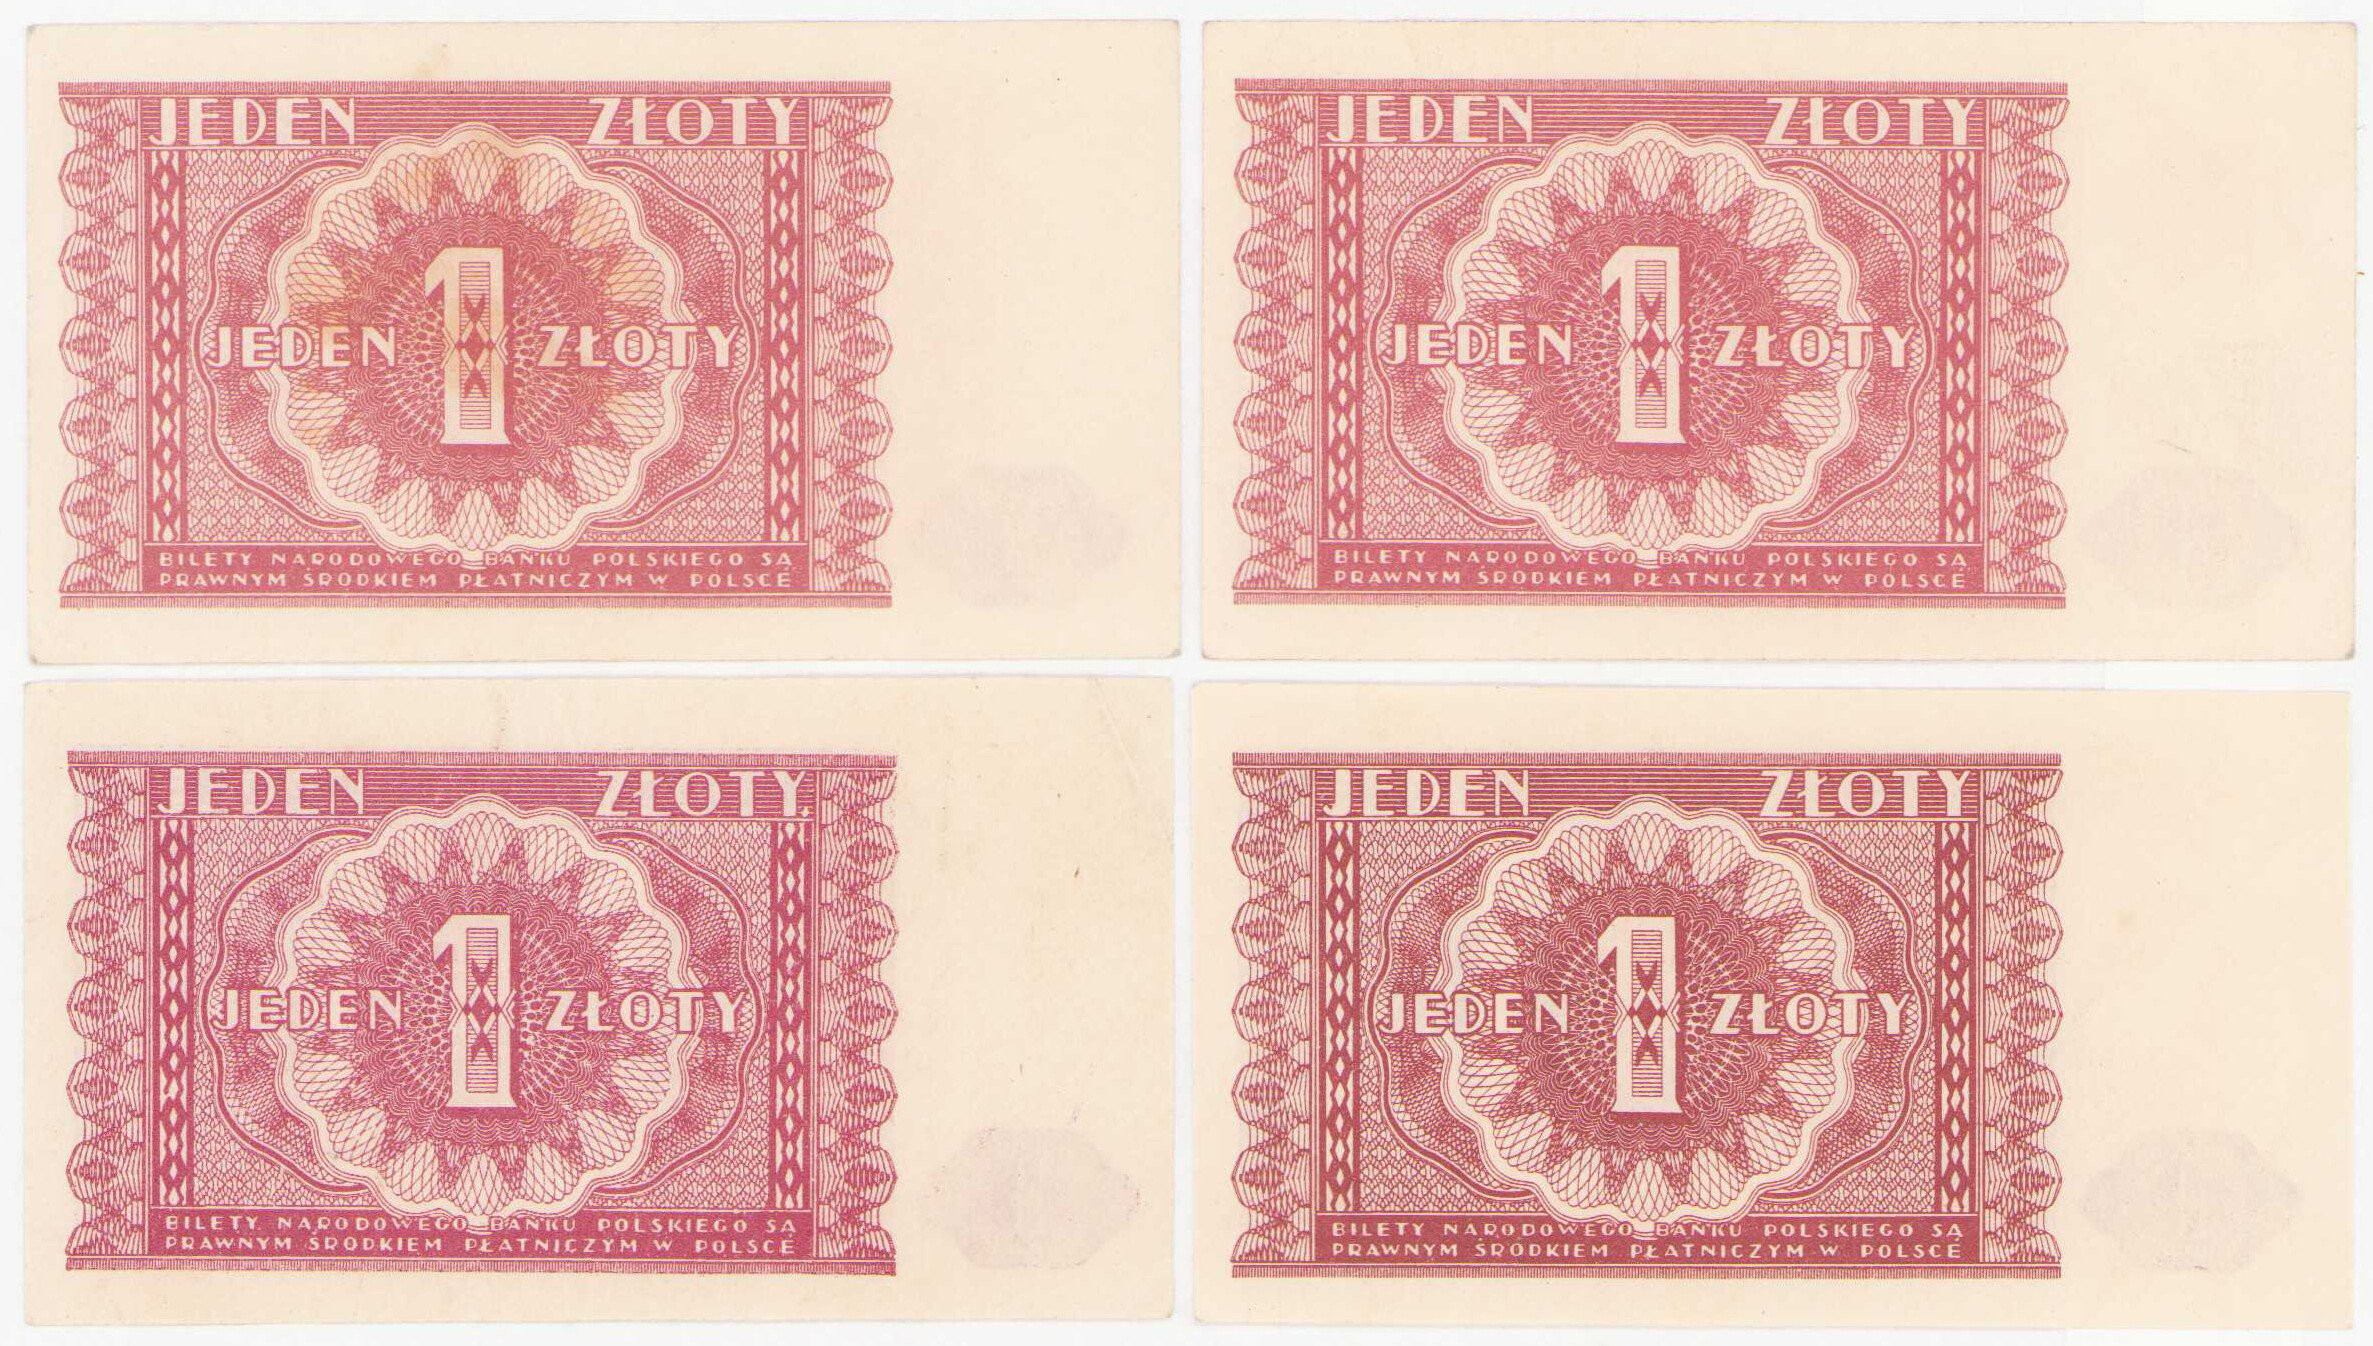 1 złoty 1946 – zestaw 4 banknotów